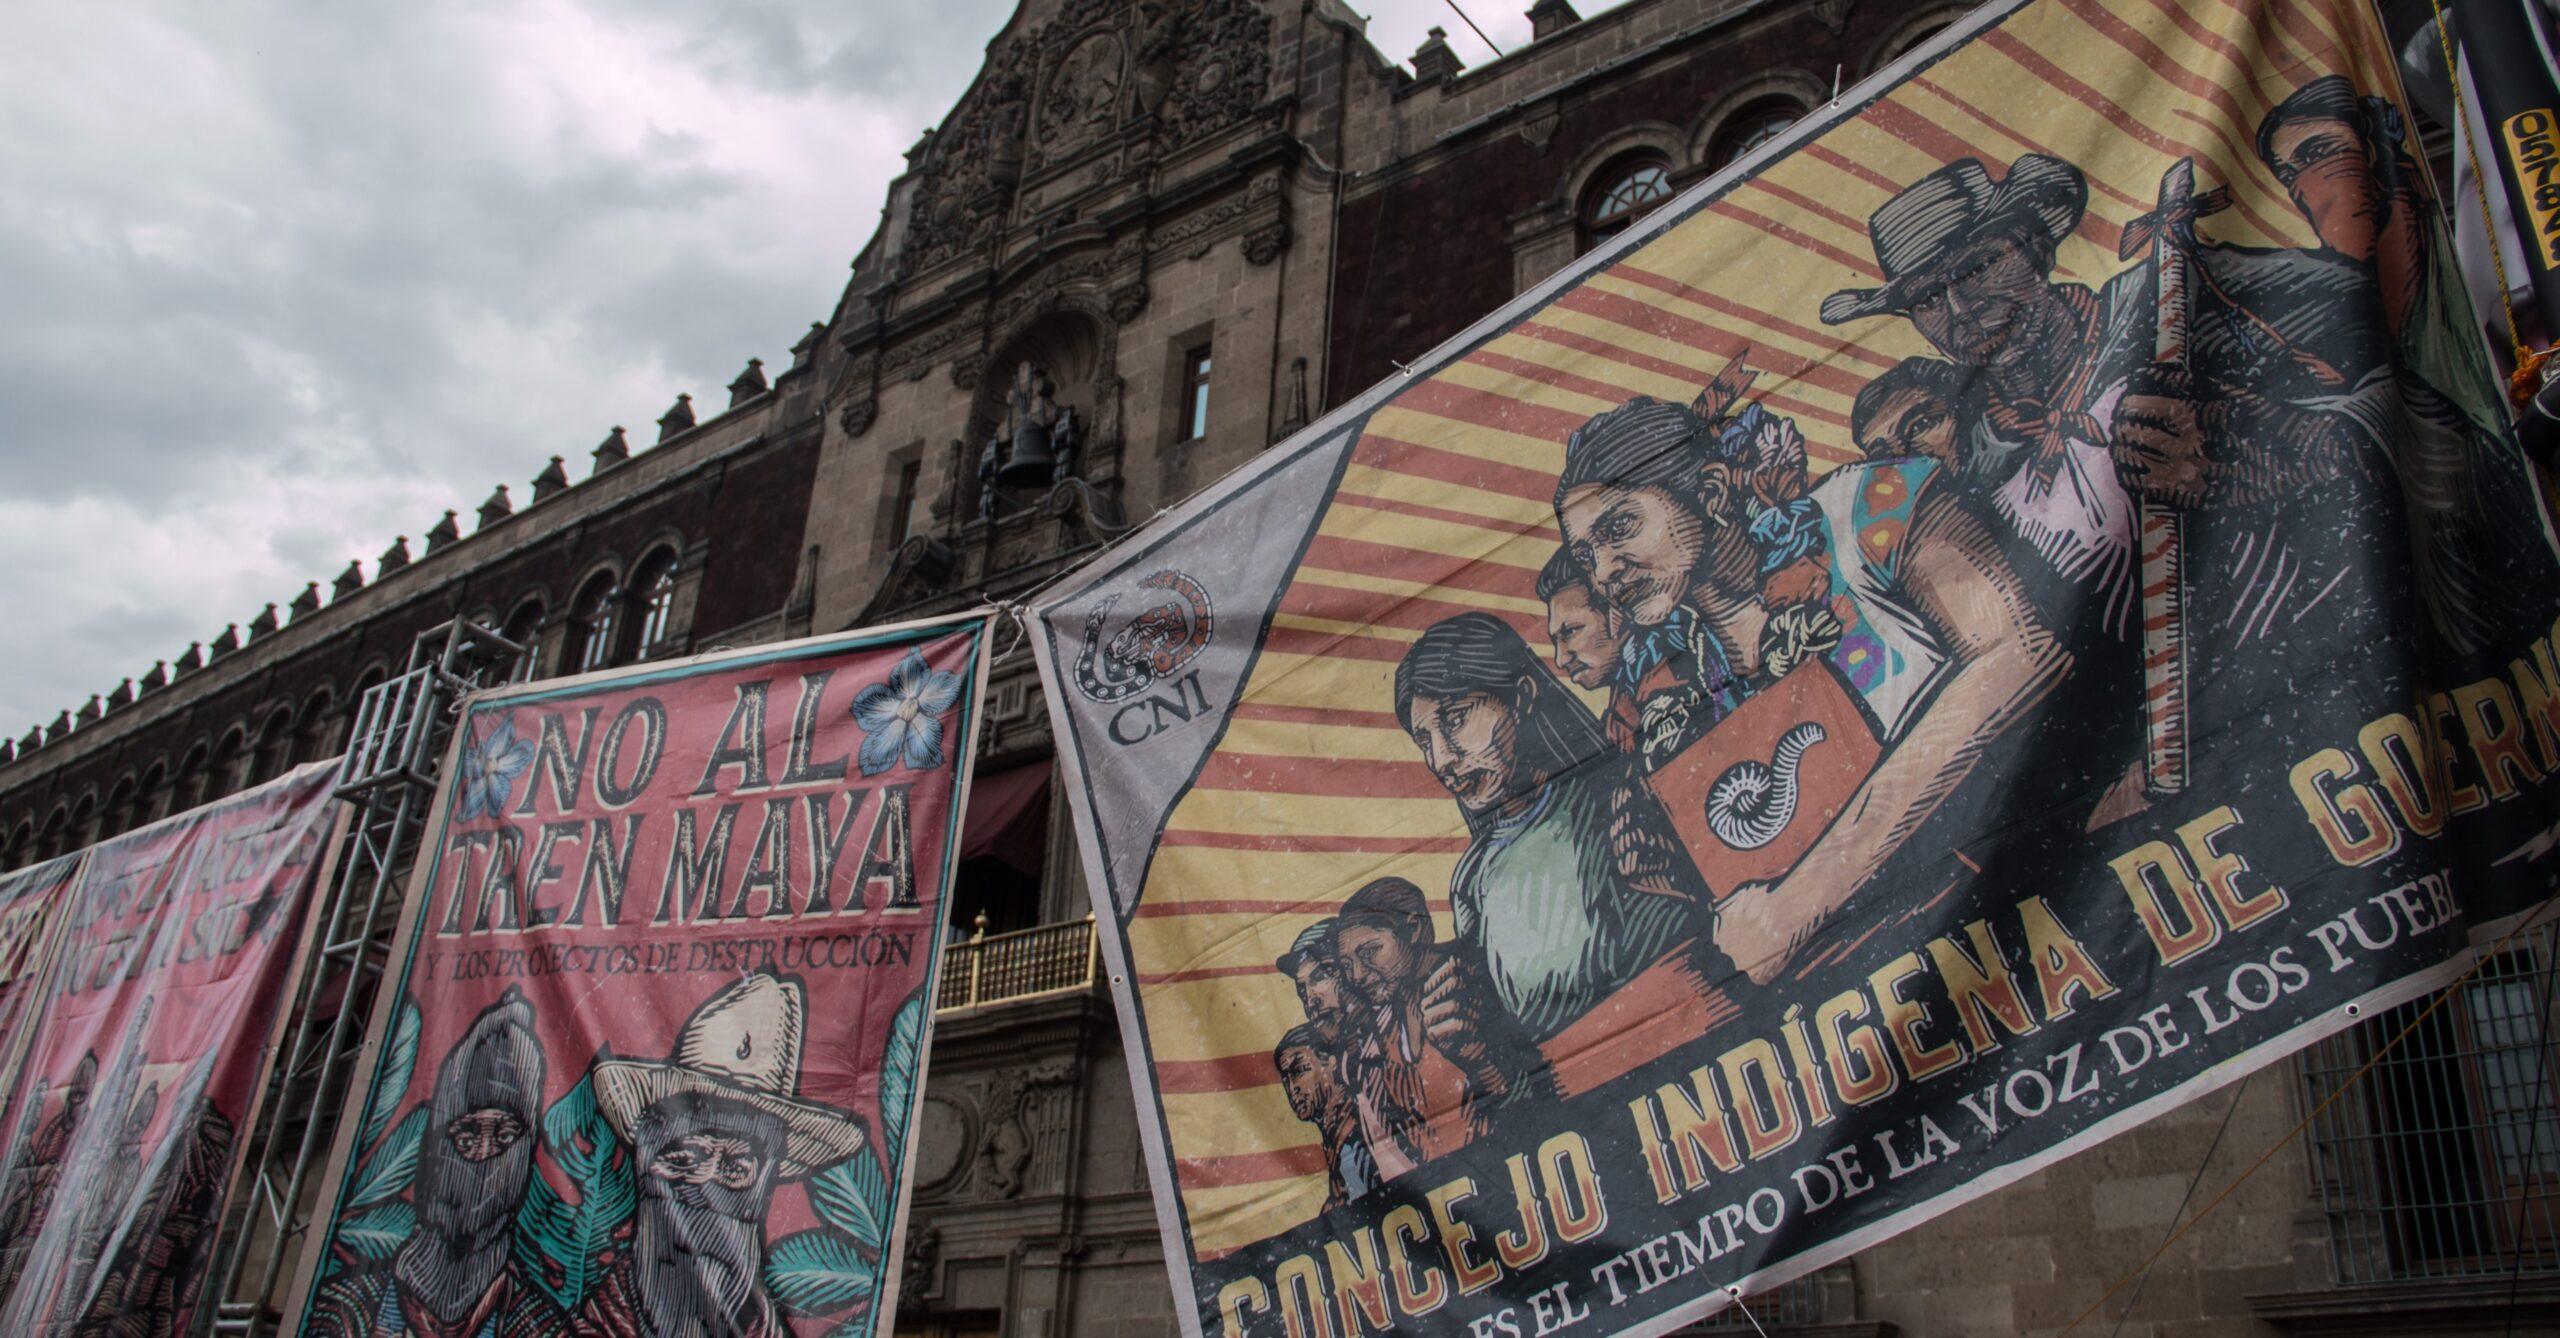 EZLN rechaza Tren Maya por que destruirá su territorio; “les falta información”, responde AMLO